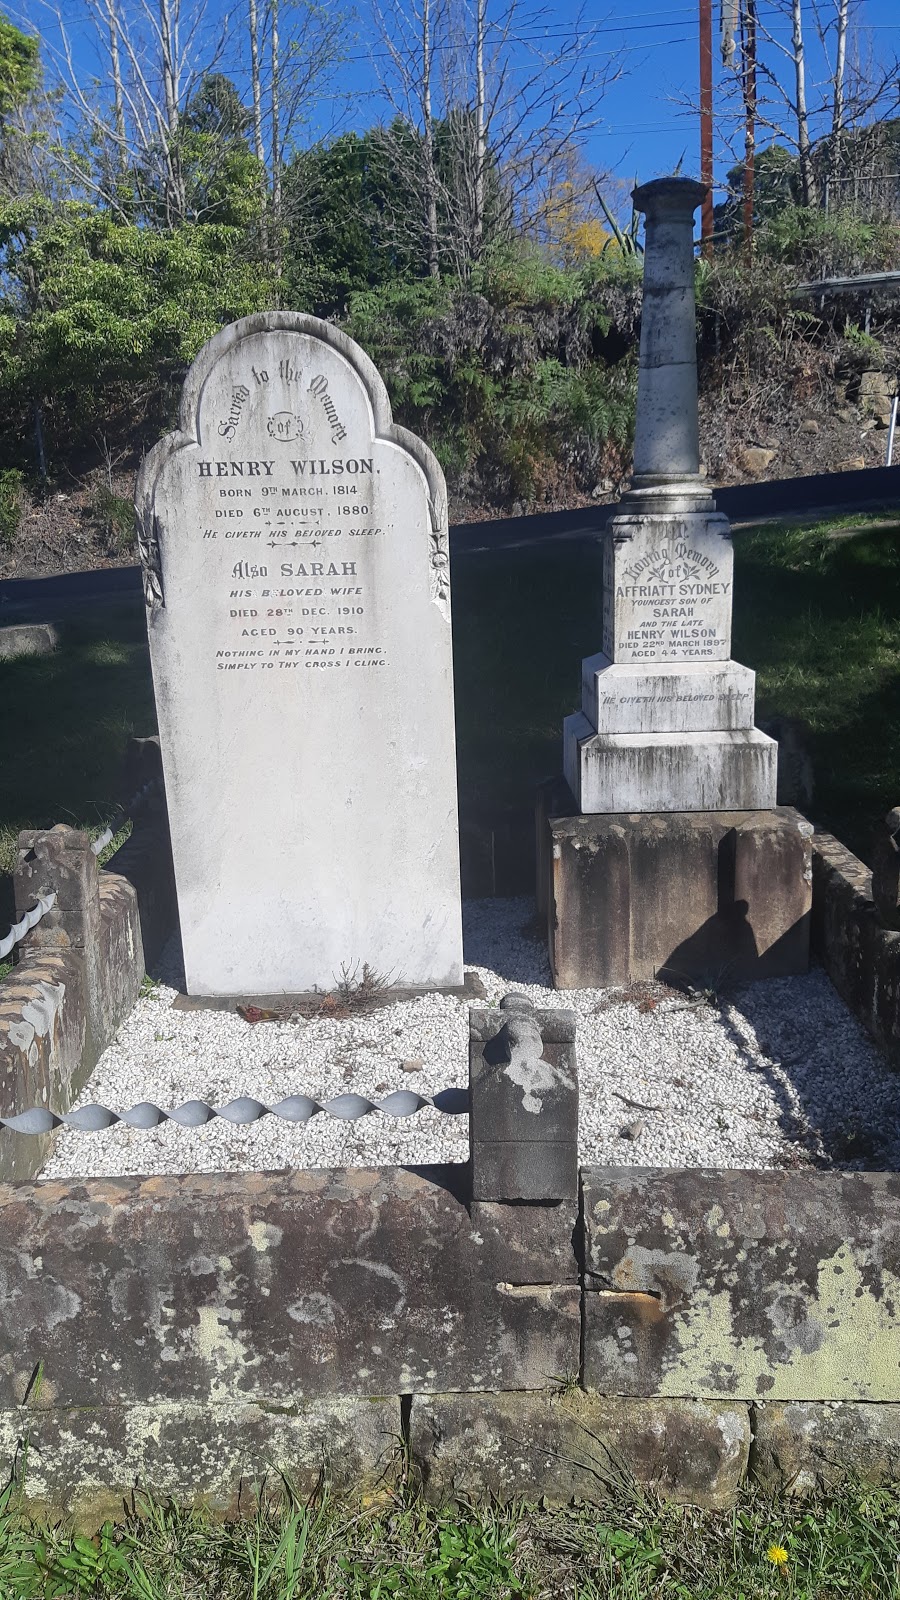 Sir Henry Parkes Grave place | park | Faulconbridge NSW 2776, Australia